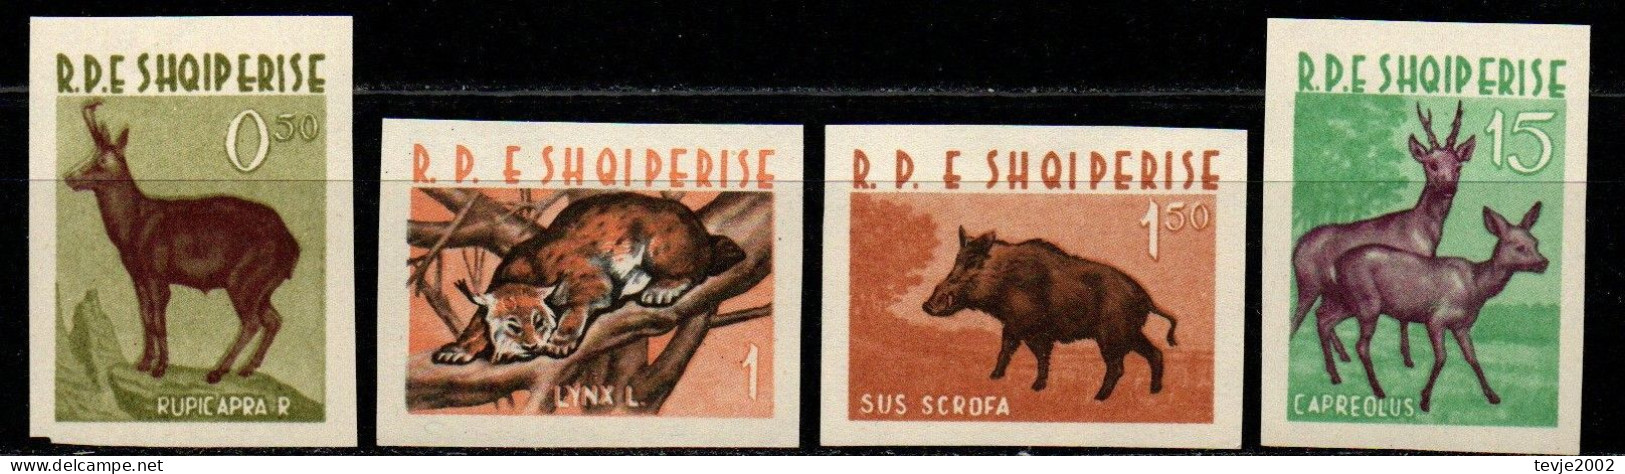 Albanien 1962 - Mi.Nr. 704 - 707 - Postfrisch MNH - Tiere Animals - Game